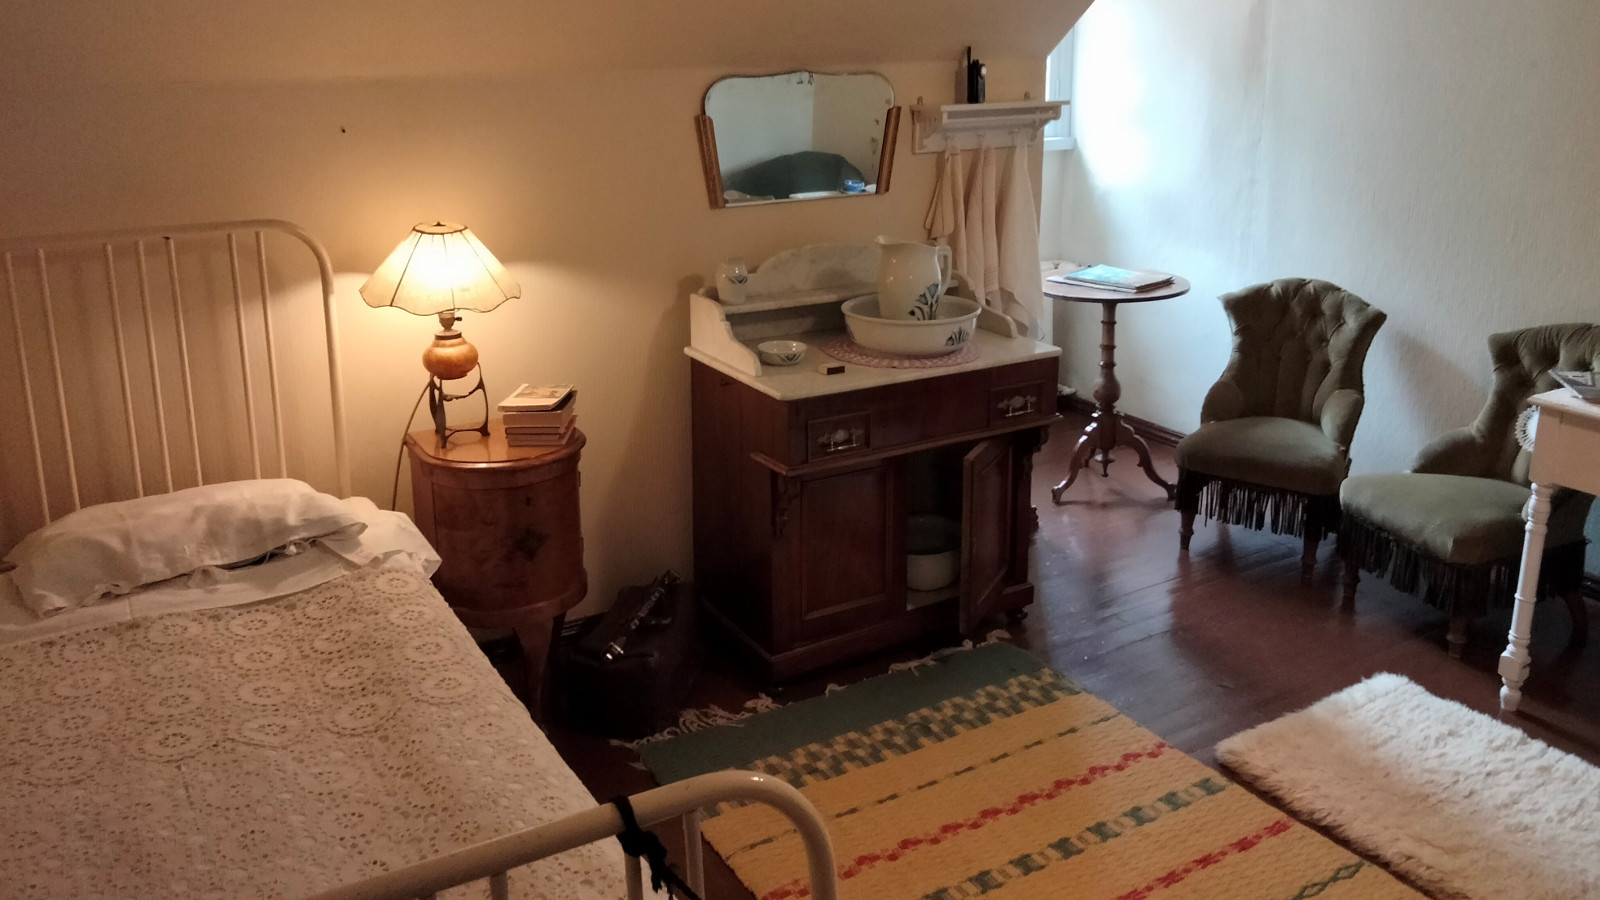 Kuvassa on vinokattoinen ullakkohuone, jossa on vasemmalla metallipäätyinen sänky, jossa on vaalea peite.  Vieressä on puinen yöpöytä, jonka päällä on lamppu ja vieressä pieni piironki.